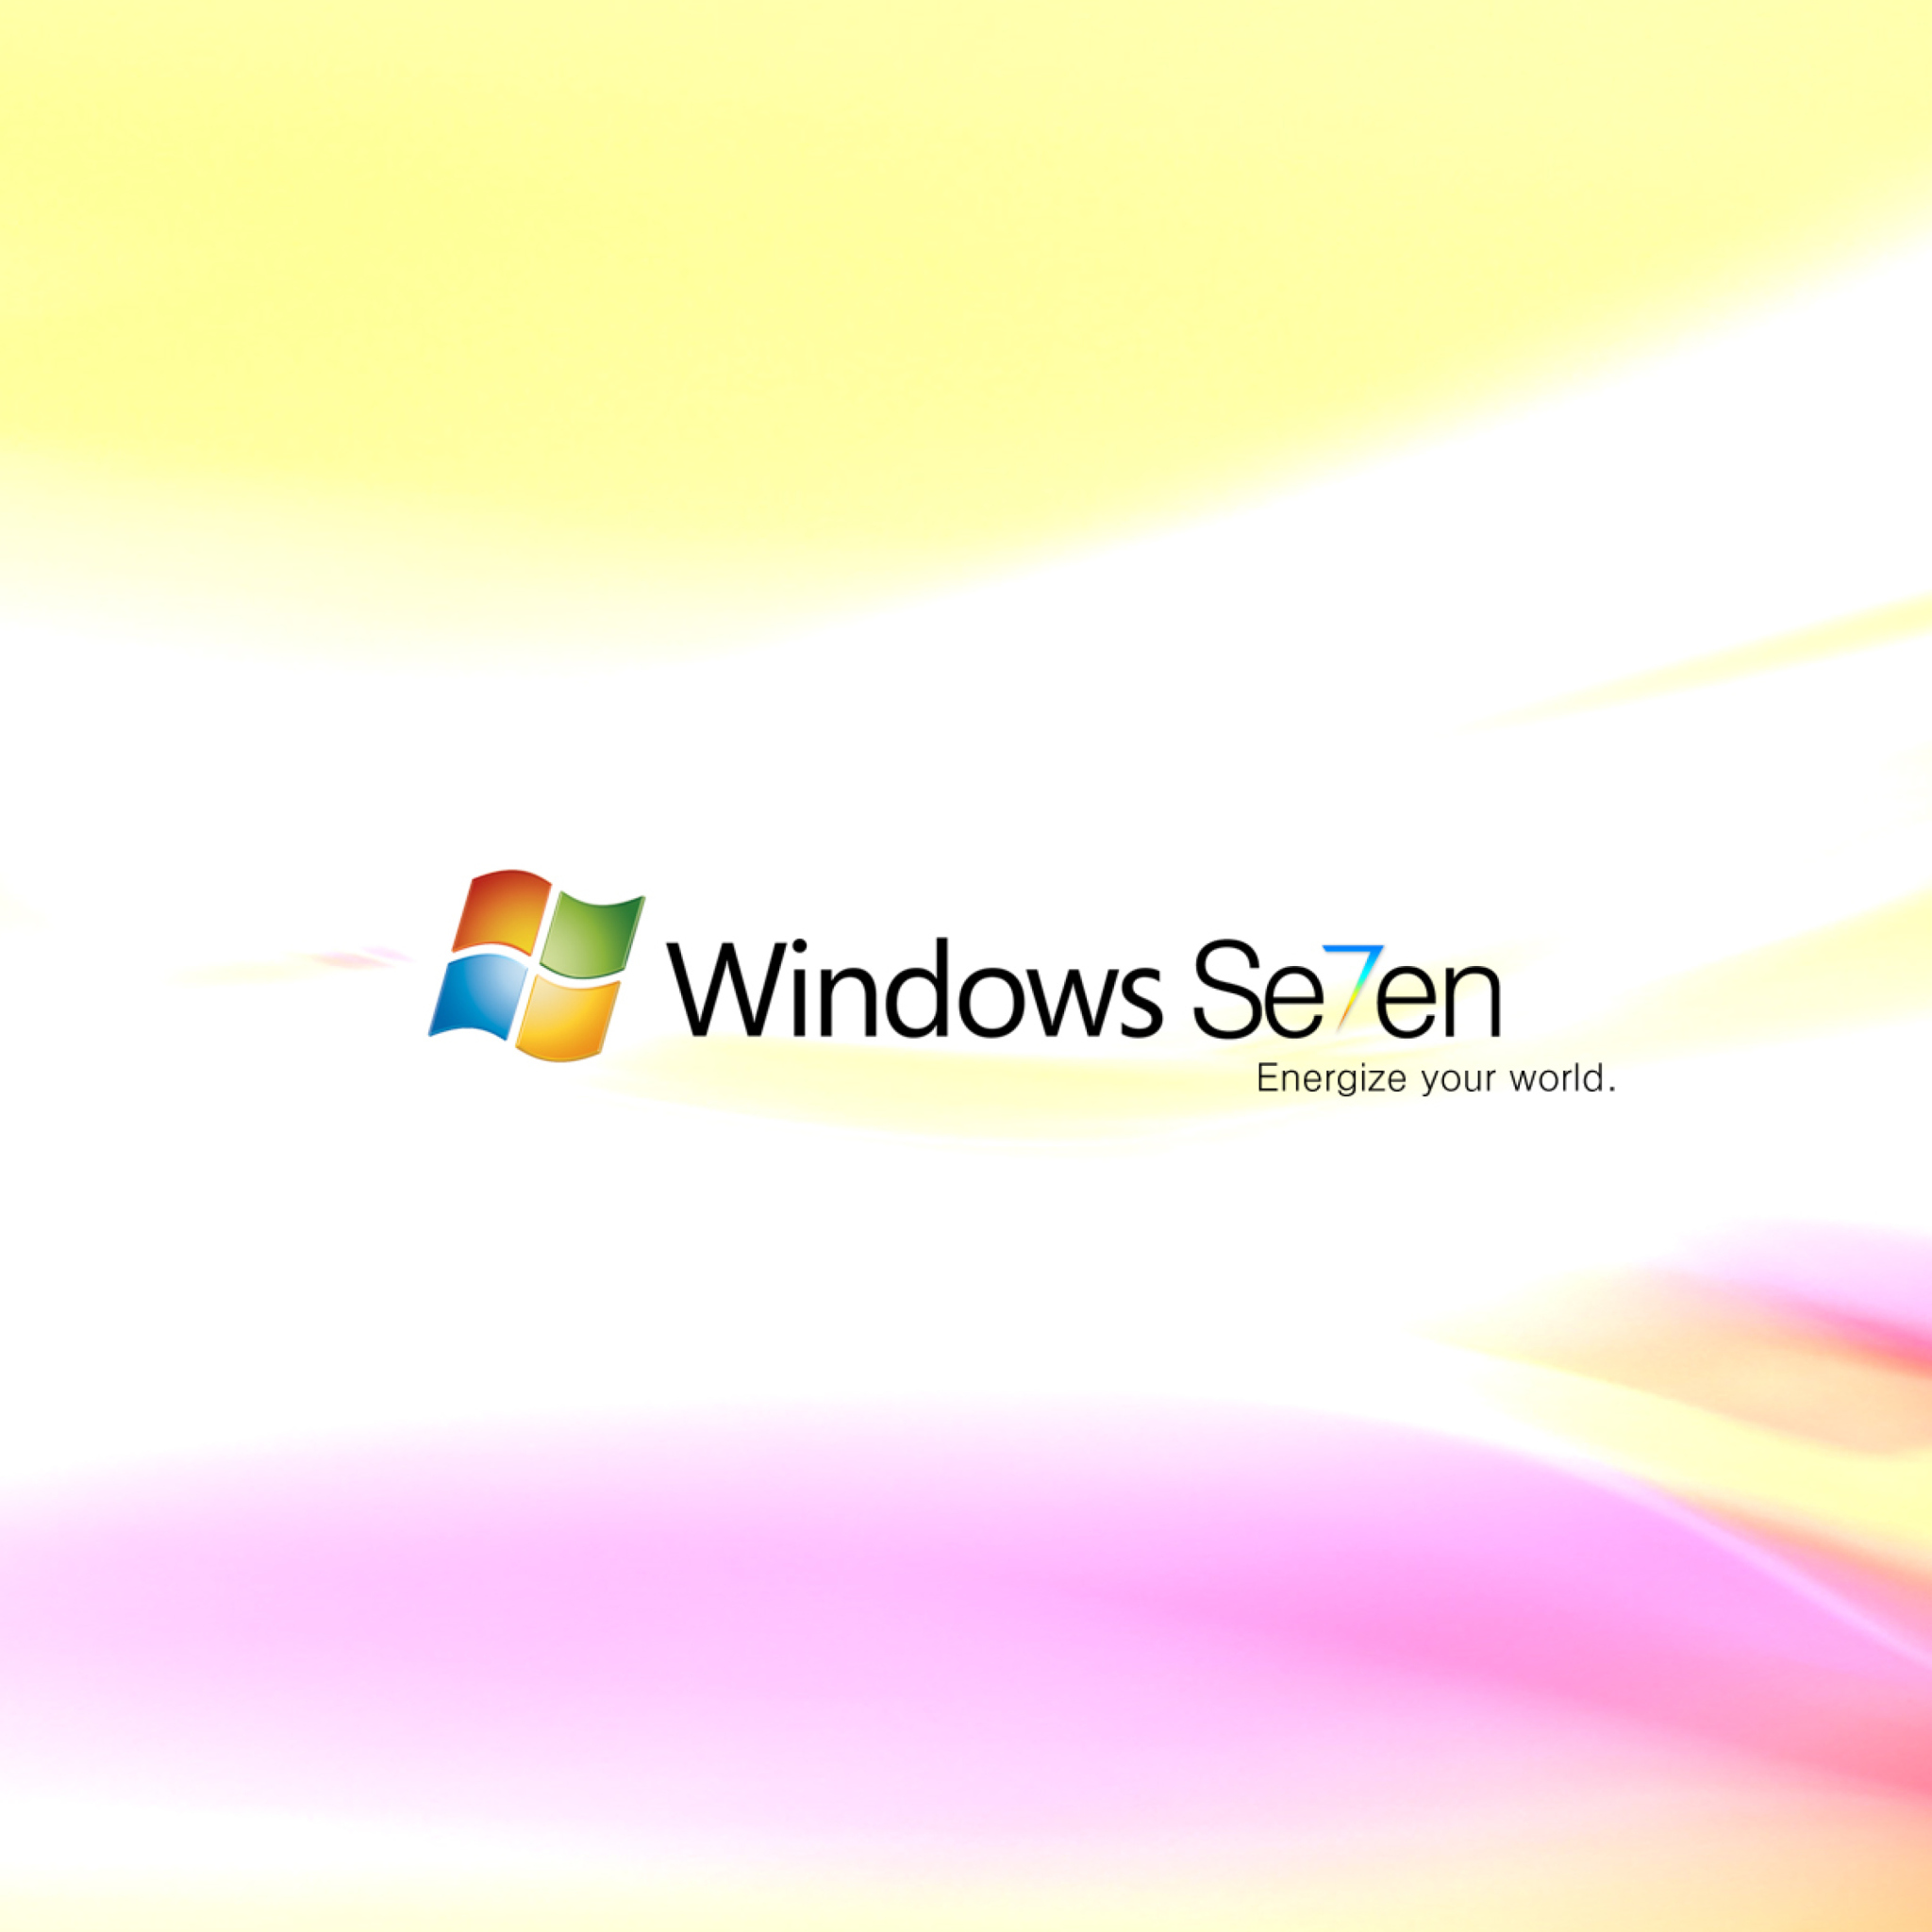 Windows Se7en wallpaper 2048x2048